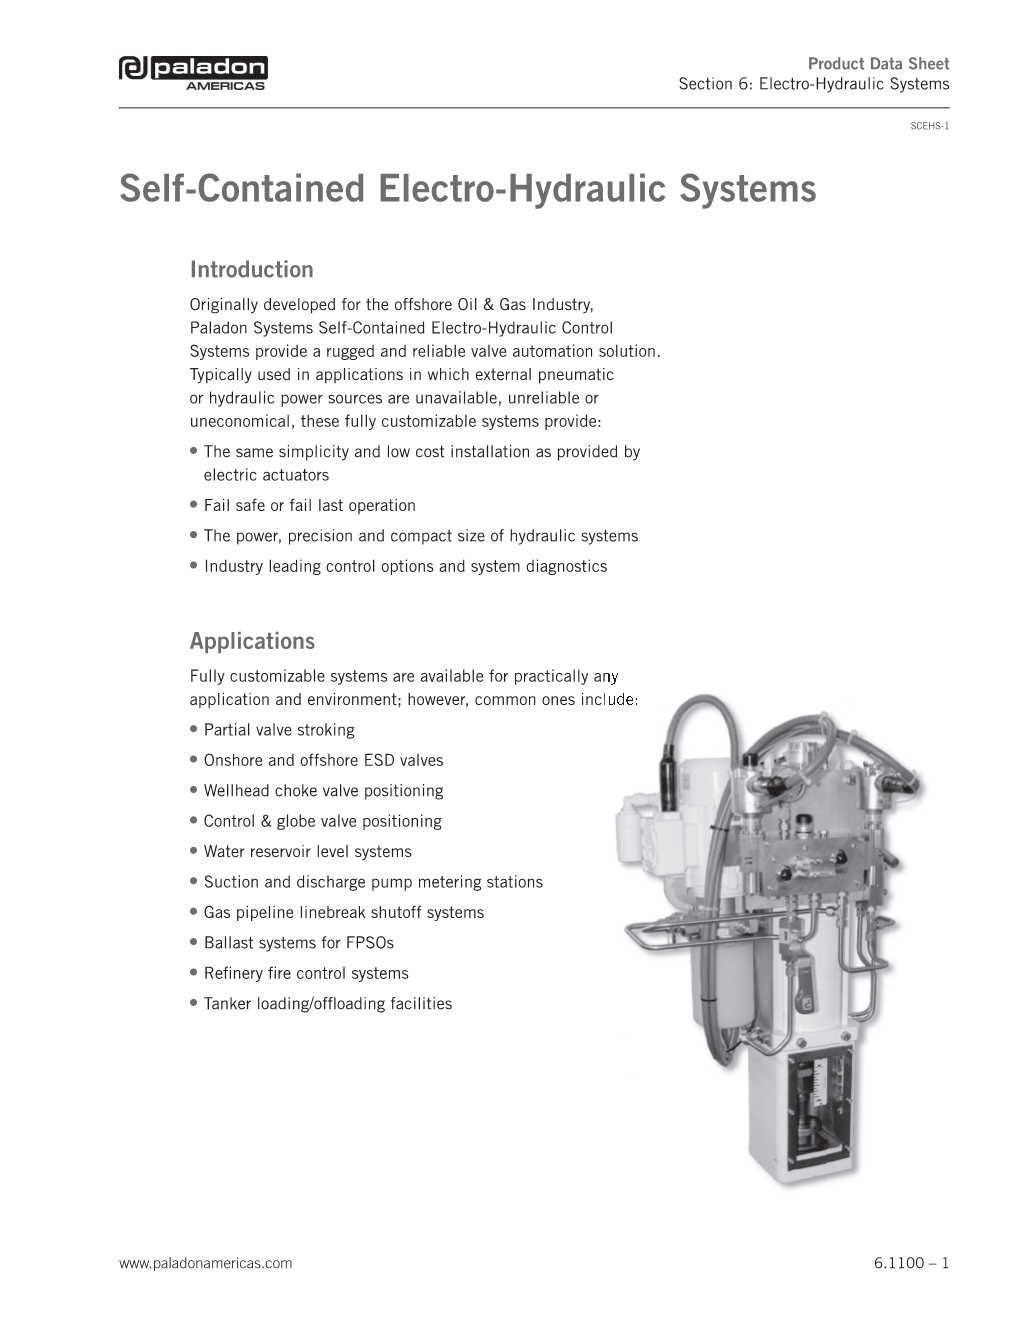 SEC 6.1100 Electro Hydraulic Systems.Indd